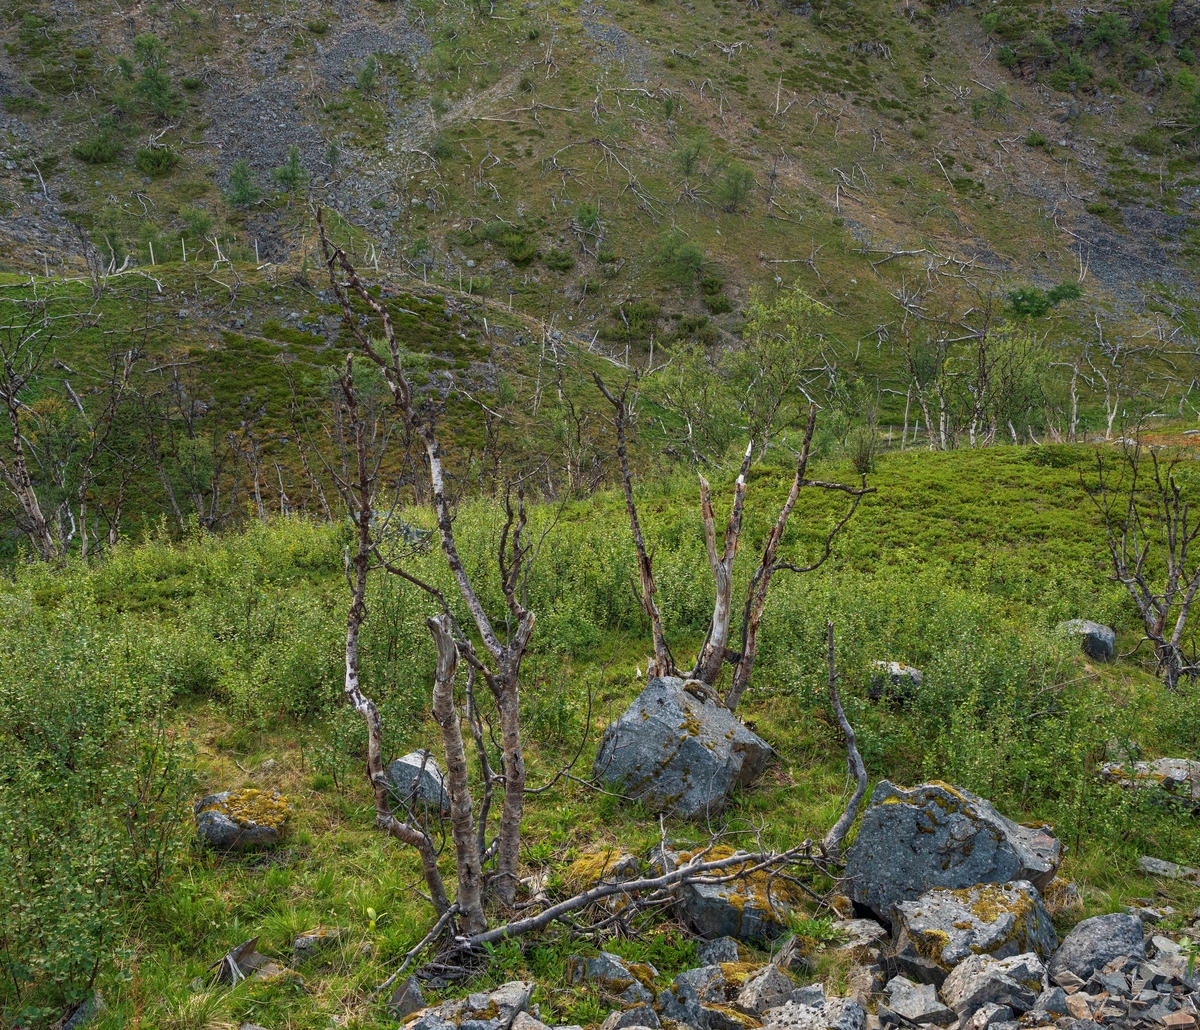 Fjellbjørkeskog (Betula pubescens) på Ifjordfjellet i Tana i Finnmark, der en del av trærne hadde dødd etter massive angrep fra fjellbjørkemåler (Epirrata autumnata), som er en sommerfuglart i målerfamilien. Denne arten legger egg, som overvintrer på bjørketrær, der de klekkes og blir til larver når våren kommer. Larvene blir til voksne sommerfugler om høsten. I mellomtida spiser de bladverket av trærne, som på den måten mister mesteparten av sitt assimilasjonsapparat. En annen sommerfuglart, bjørkefrostmåleren (Operophtera fagata), har en liknende utviklingssyklus og effekt på bjørkeskogen. Knut Skinnemoen skriver i boka «Skogskjøtsel» (1969) at «… i fjelltraktene sørpå og ikke minst på nordkalotten gjør insektet stor skade fra tid til annen. Ikke sjelden dør bjørkeskogen der ut over store strekninger. Folk i de traktene sier at dersom angrepene kommer 3 år i trekk, går trærne til grunne. Da får de ikke mulighet til å assimilere så mye at de greier å holde livsprosessene i gang.»